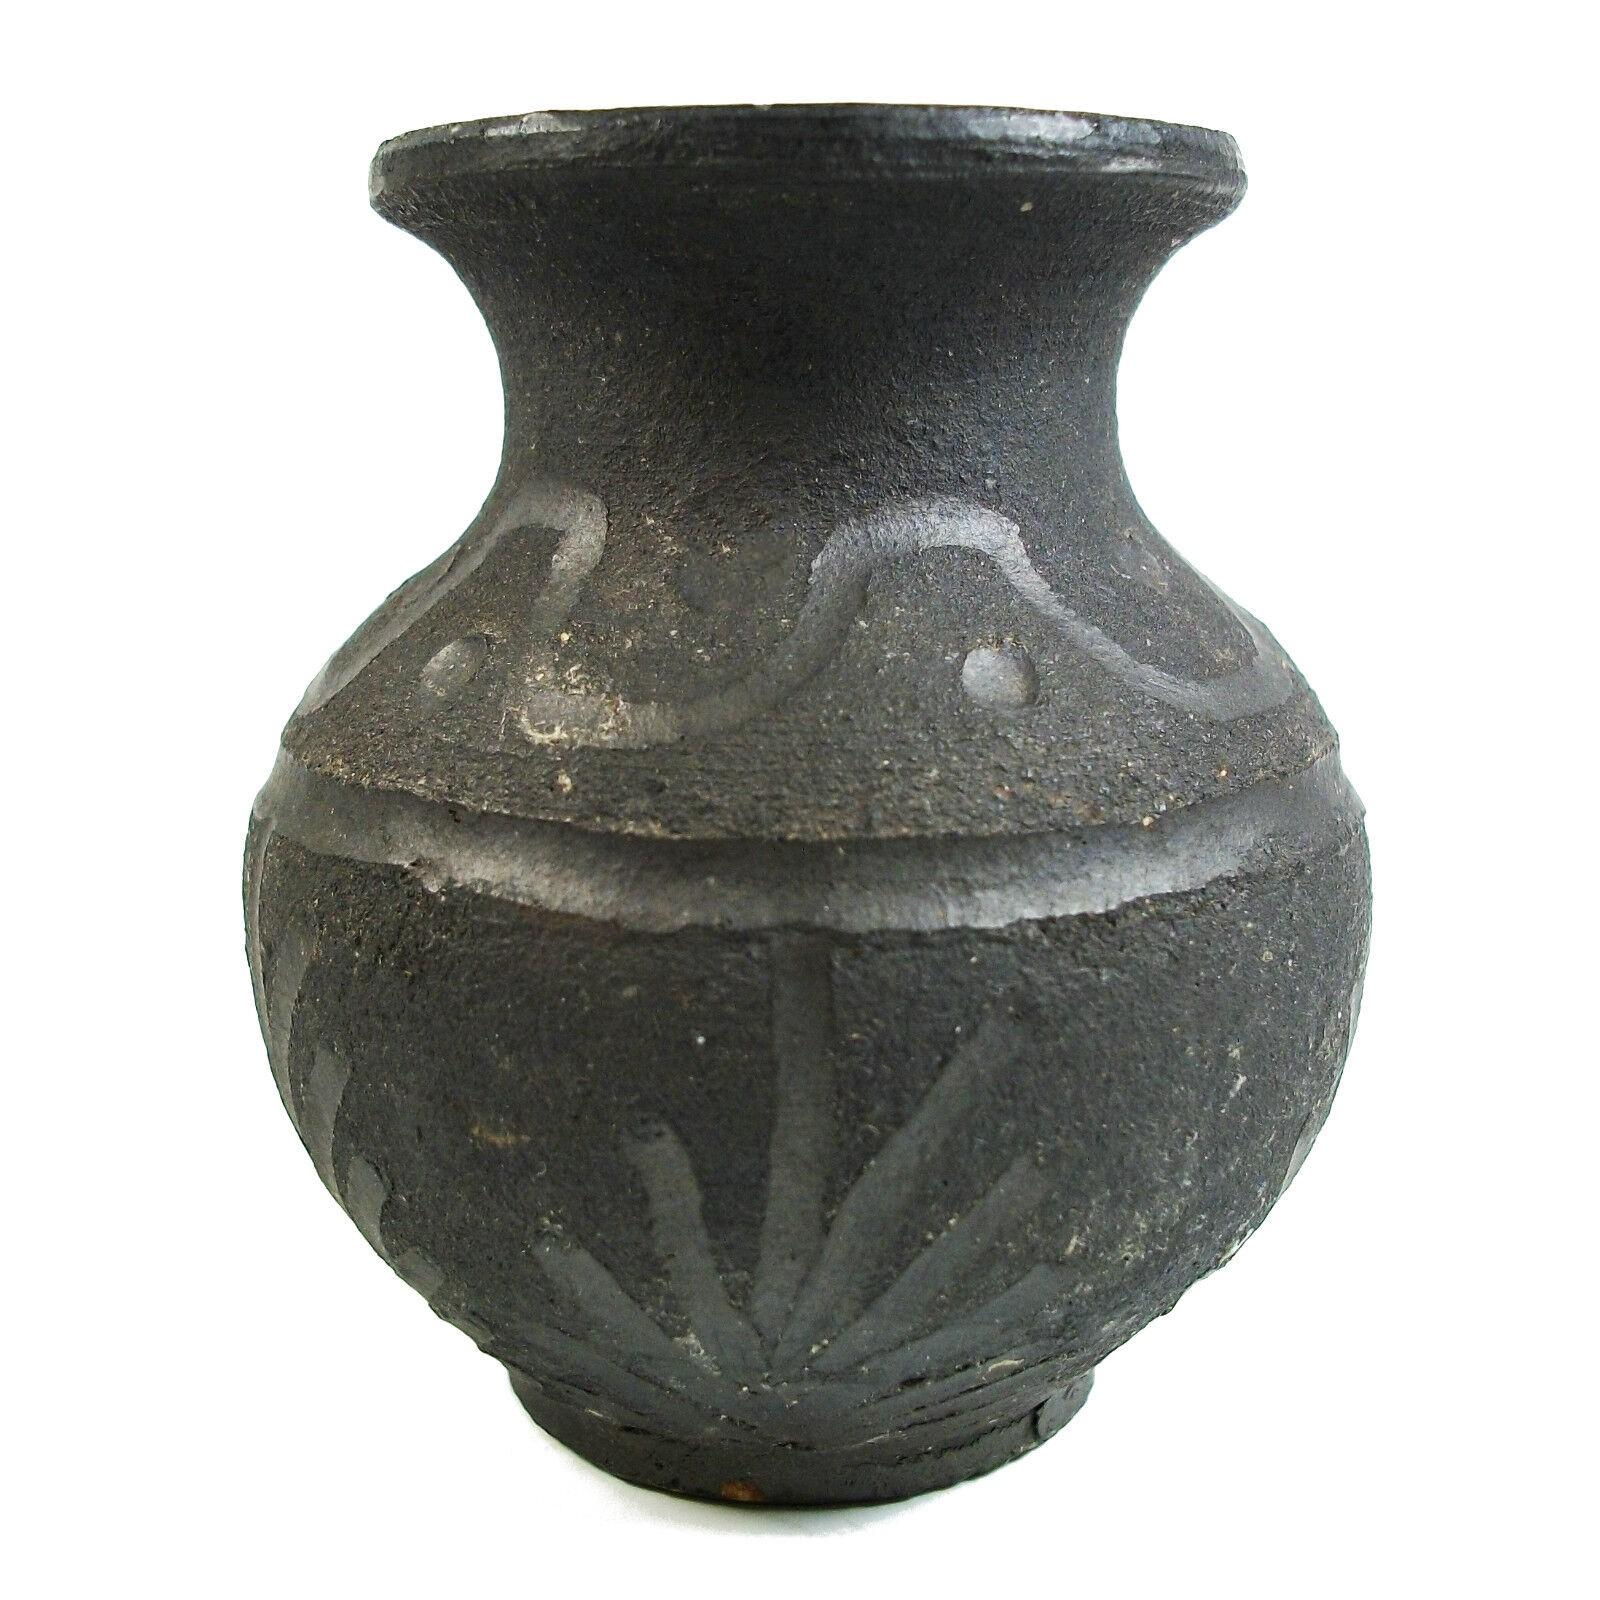 Vintage Miniatur Raku Studio Keramik Knospe Vase mit eingeschnittenen Dekoration - undeutlich auf dem Boden signiert - Ende des 20.

Ausgezeichneter Vintage-Zustand - kein Verlust - keine Beschädigung - keine Restaurierung.

Größe - 2 1/8